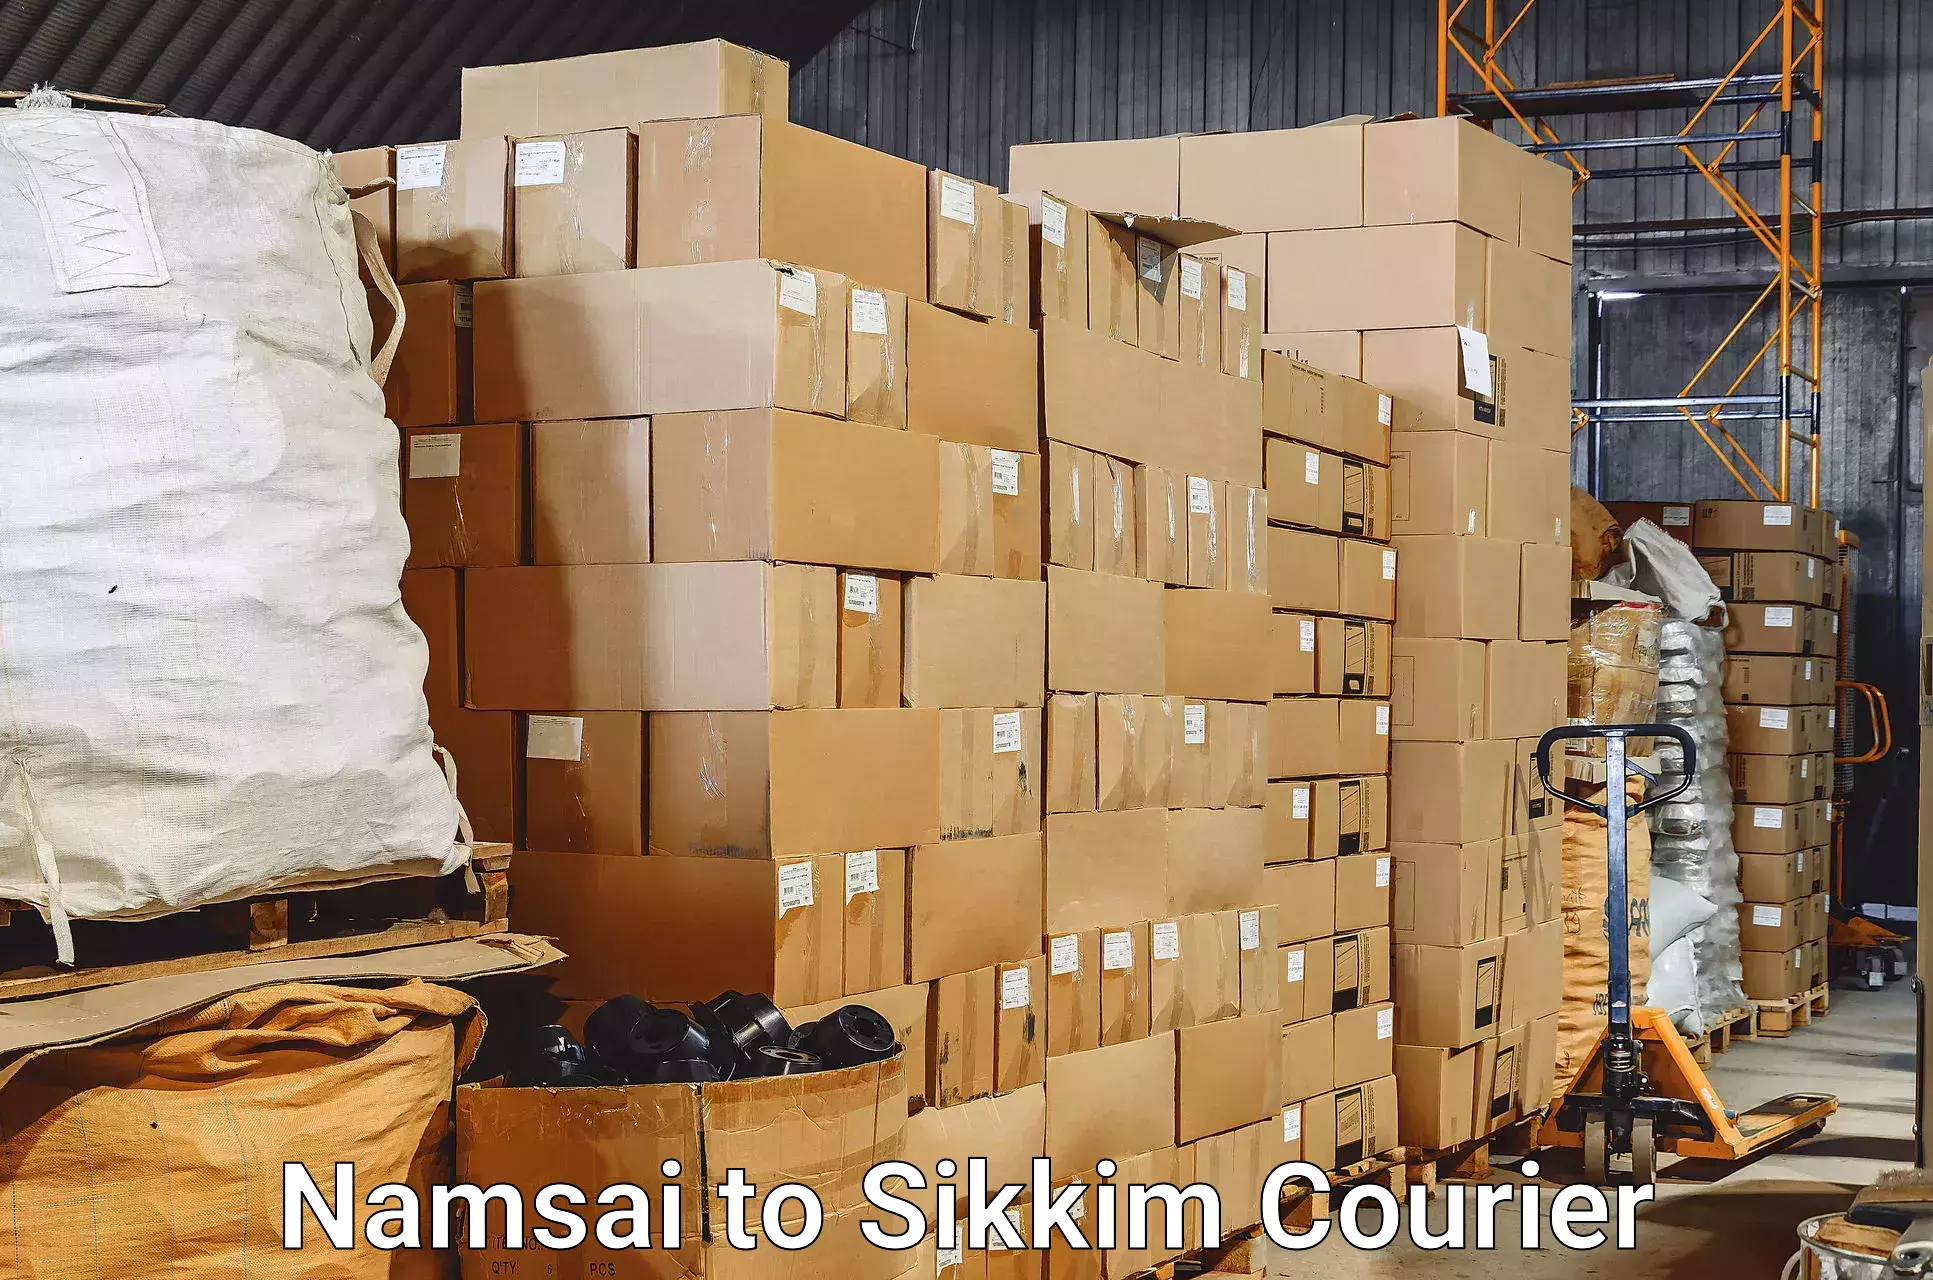 Baggage transport professionals Namsai to Mangan